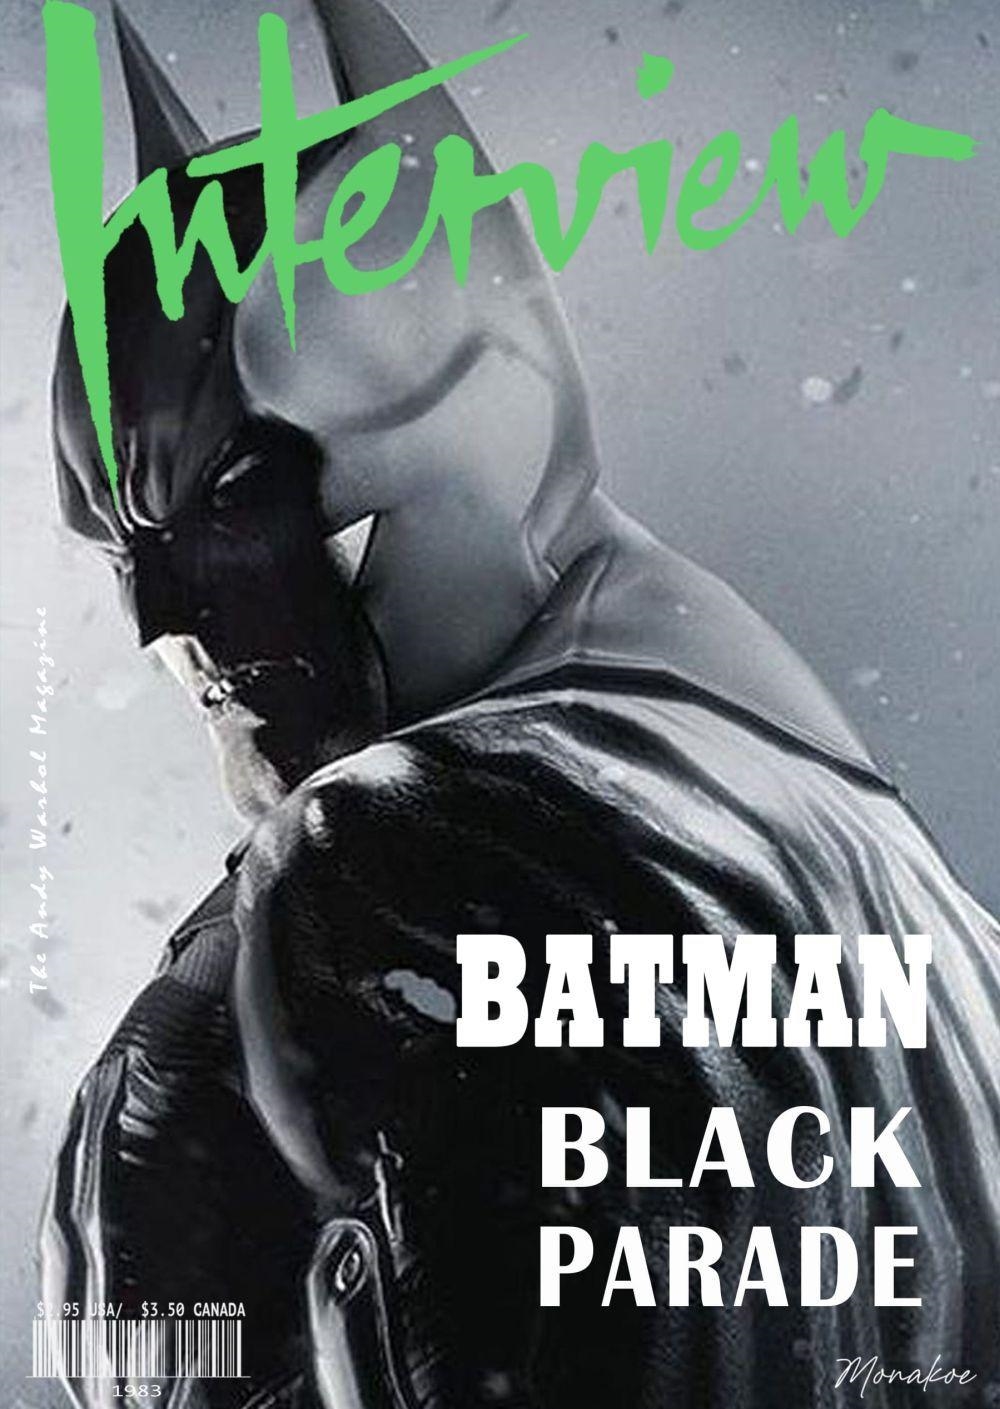 Monakoe | Interview the Andy Warhol Magazine, Batman | MutualArt